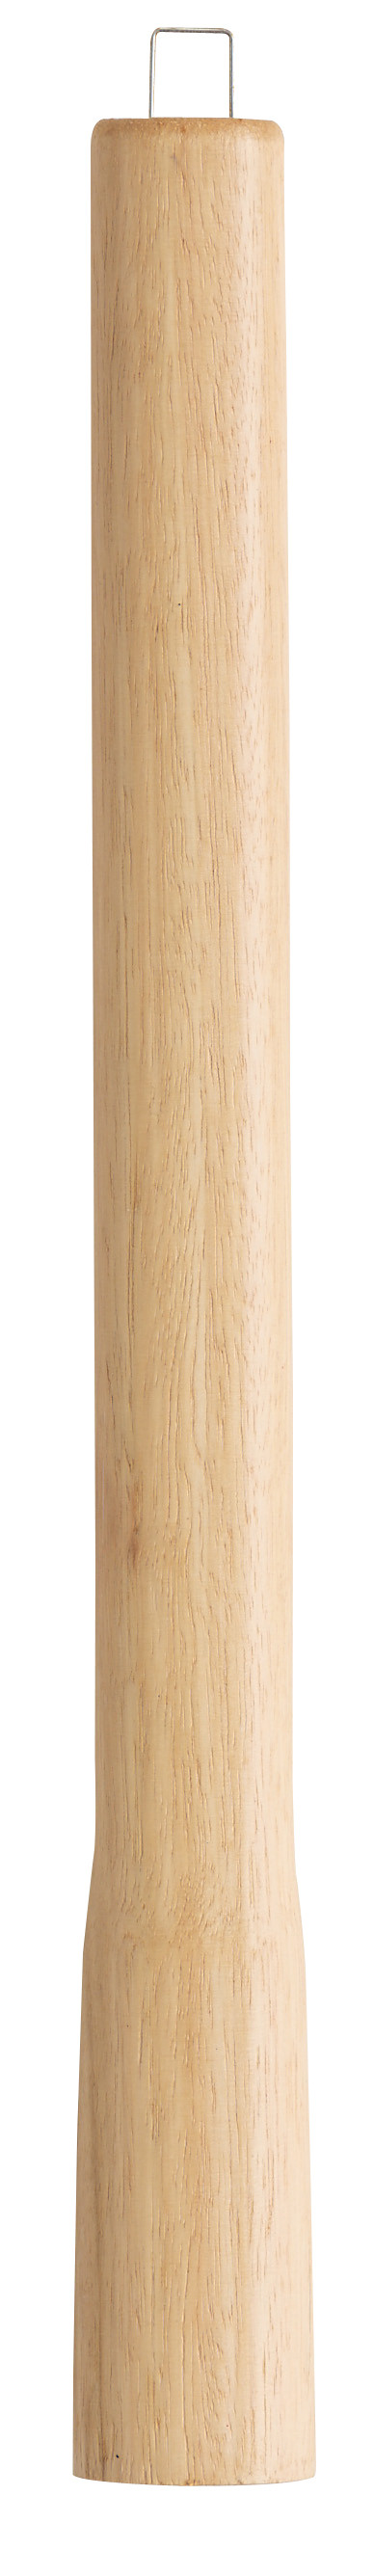 Manche de rechange en bois certifié PEFC 100% - 37 cm